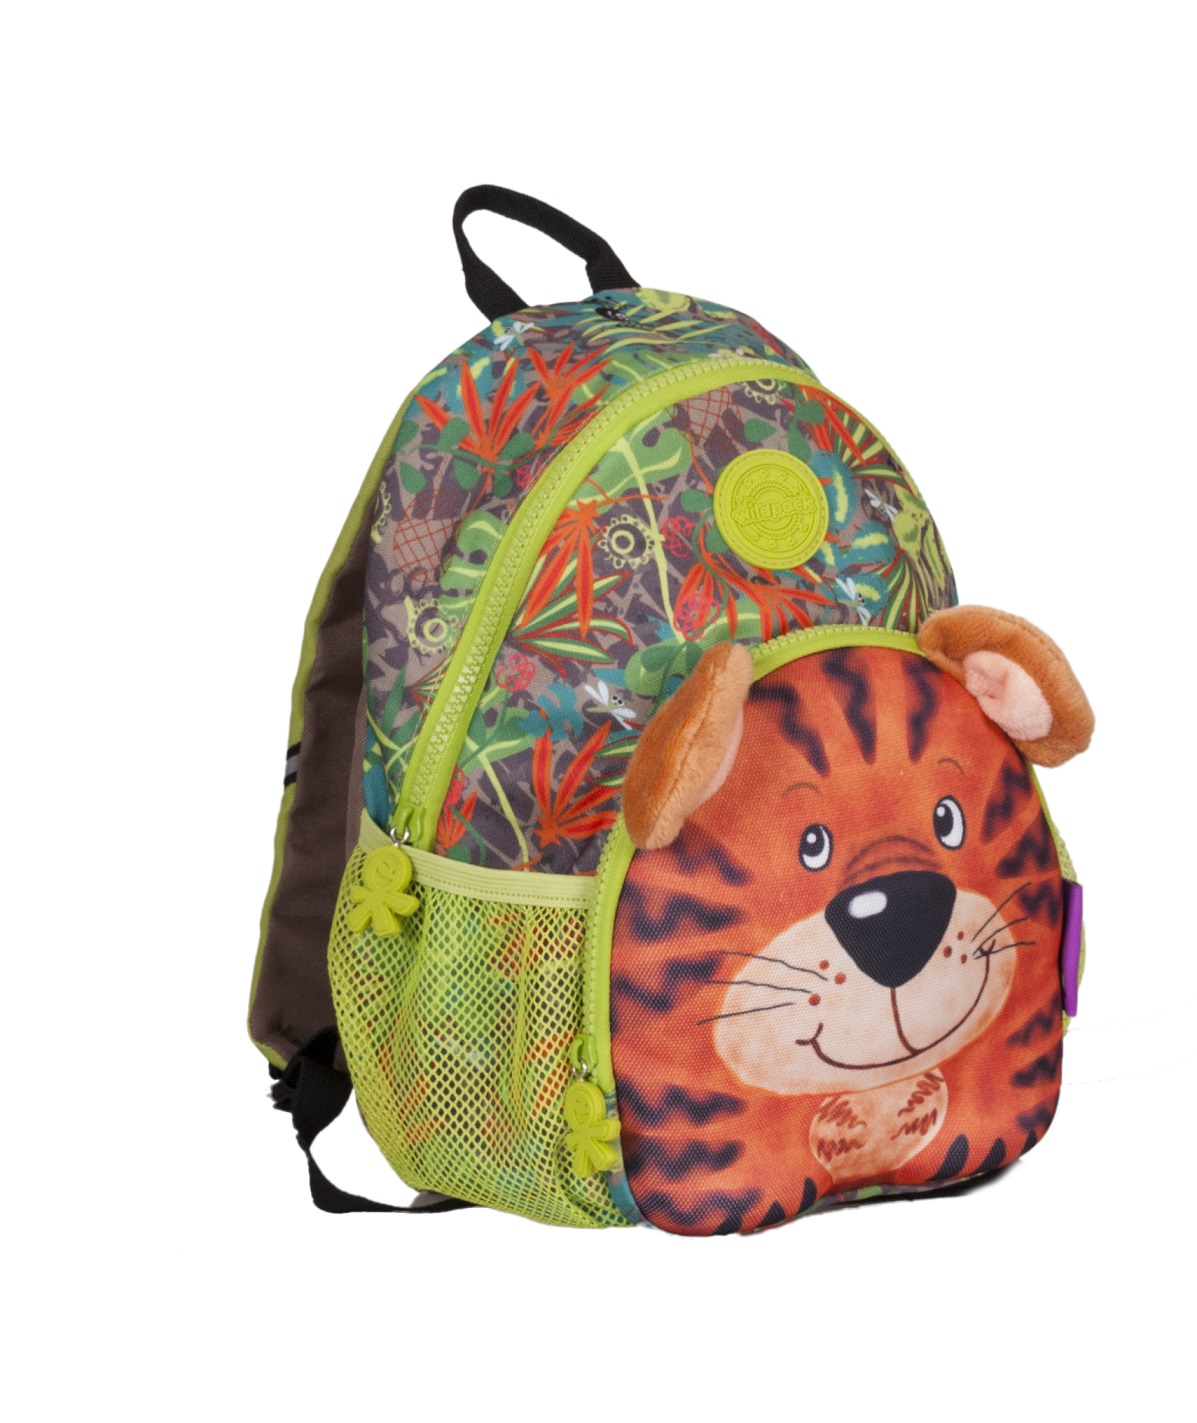 Okiedog Wildpack Junior Backpack (Assorted)